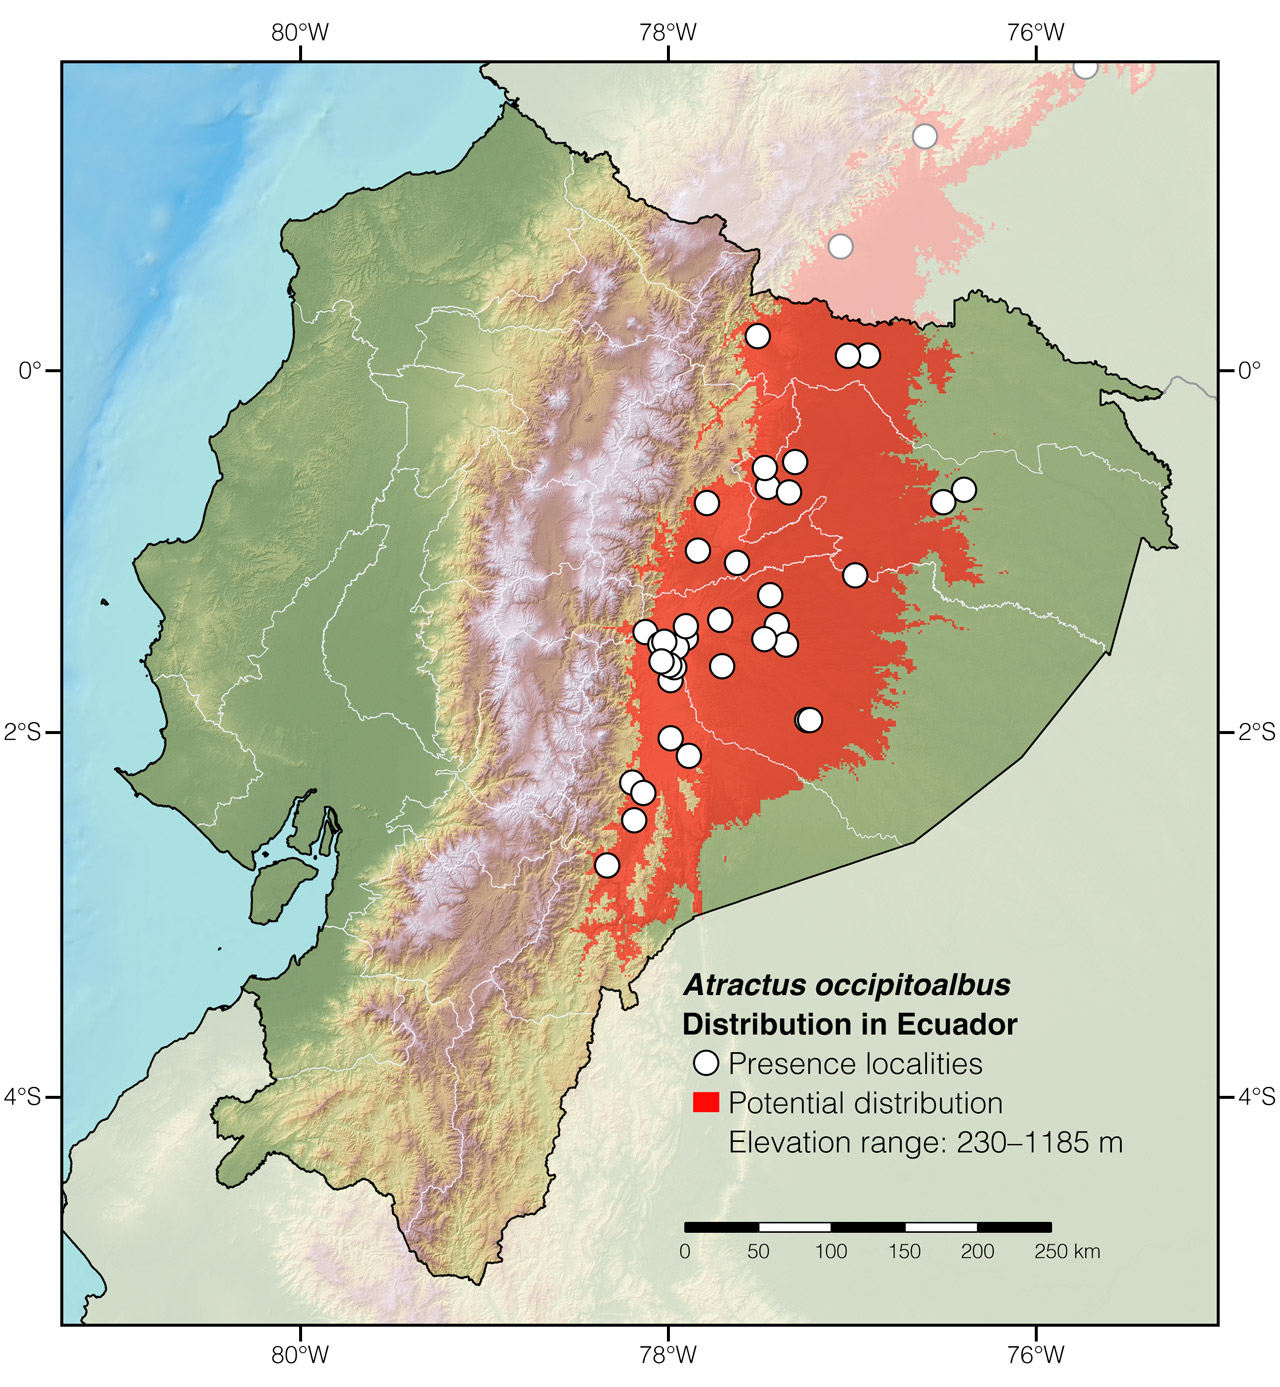 Distribution of Atractus occipitoalbus in Ecuador